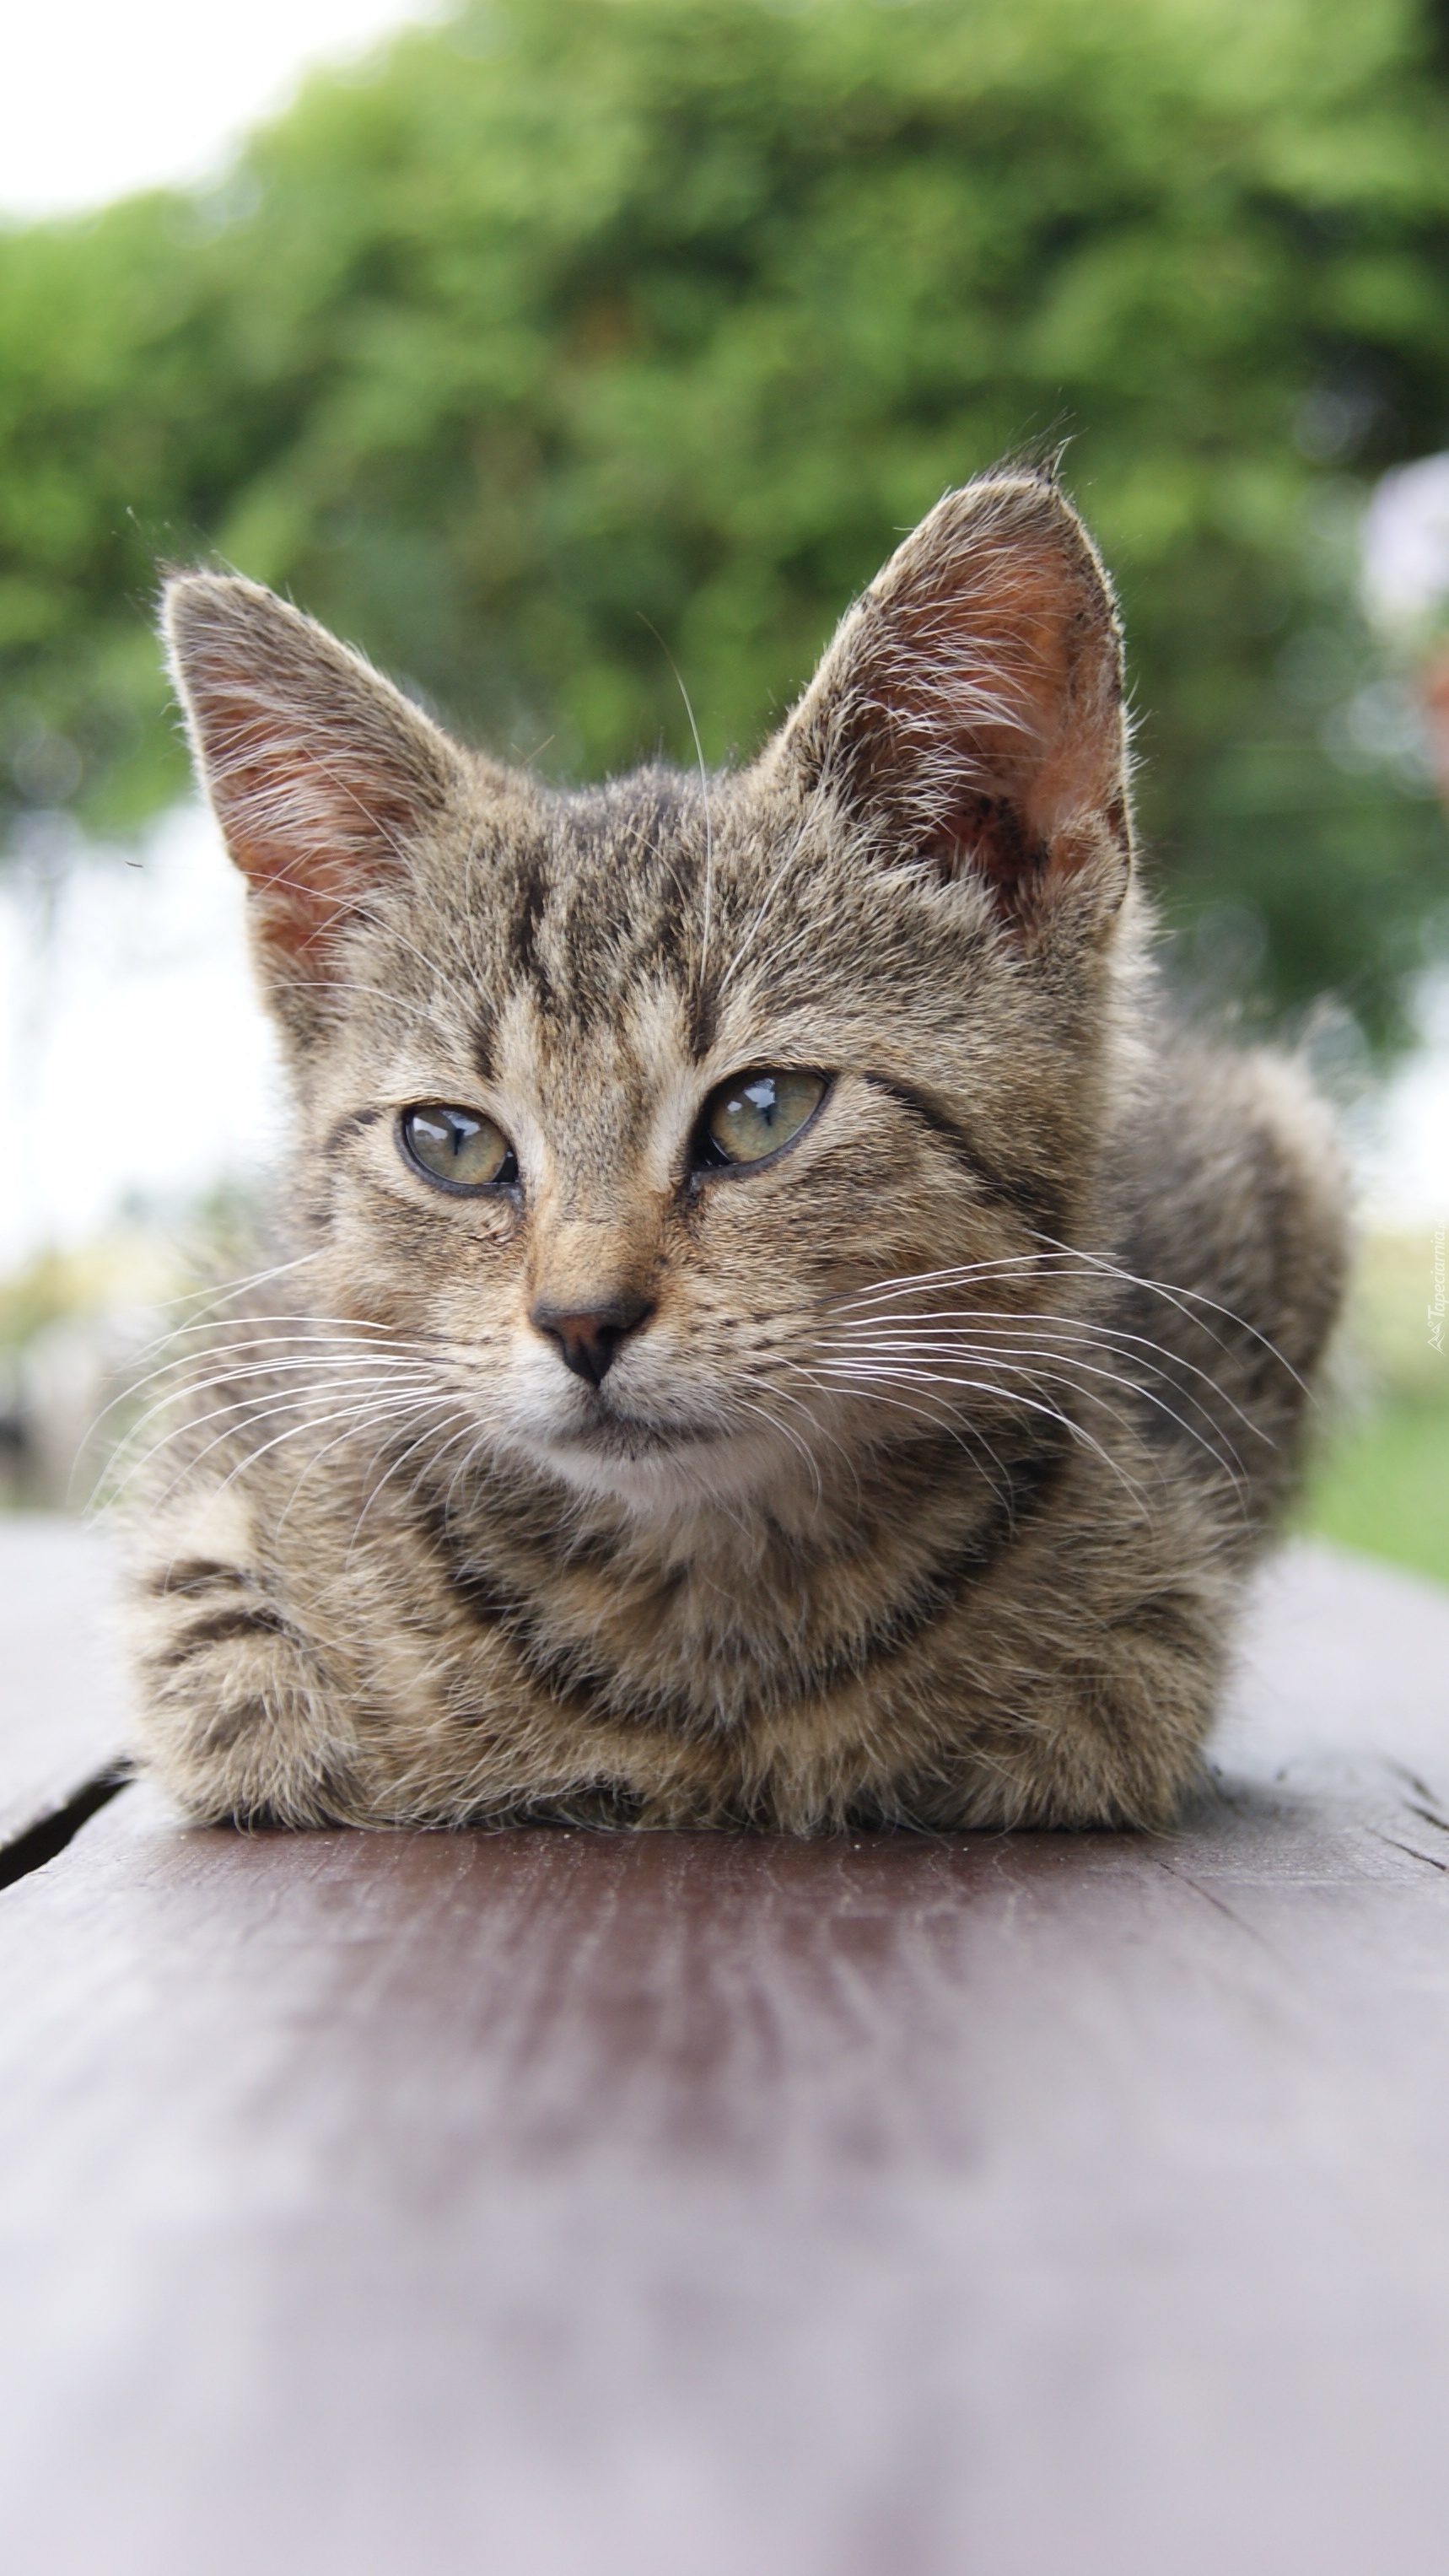 Kotek na ławeczce posiedzi troszeczkę